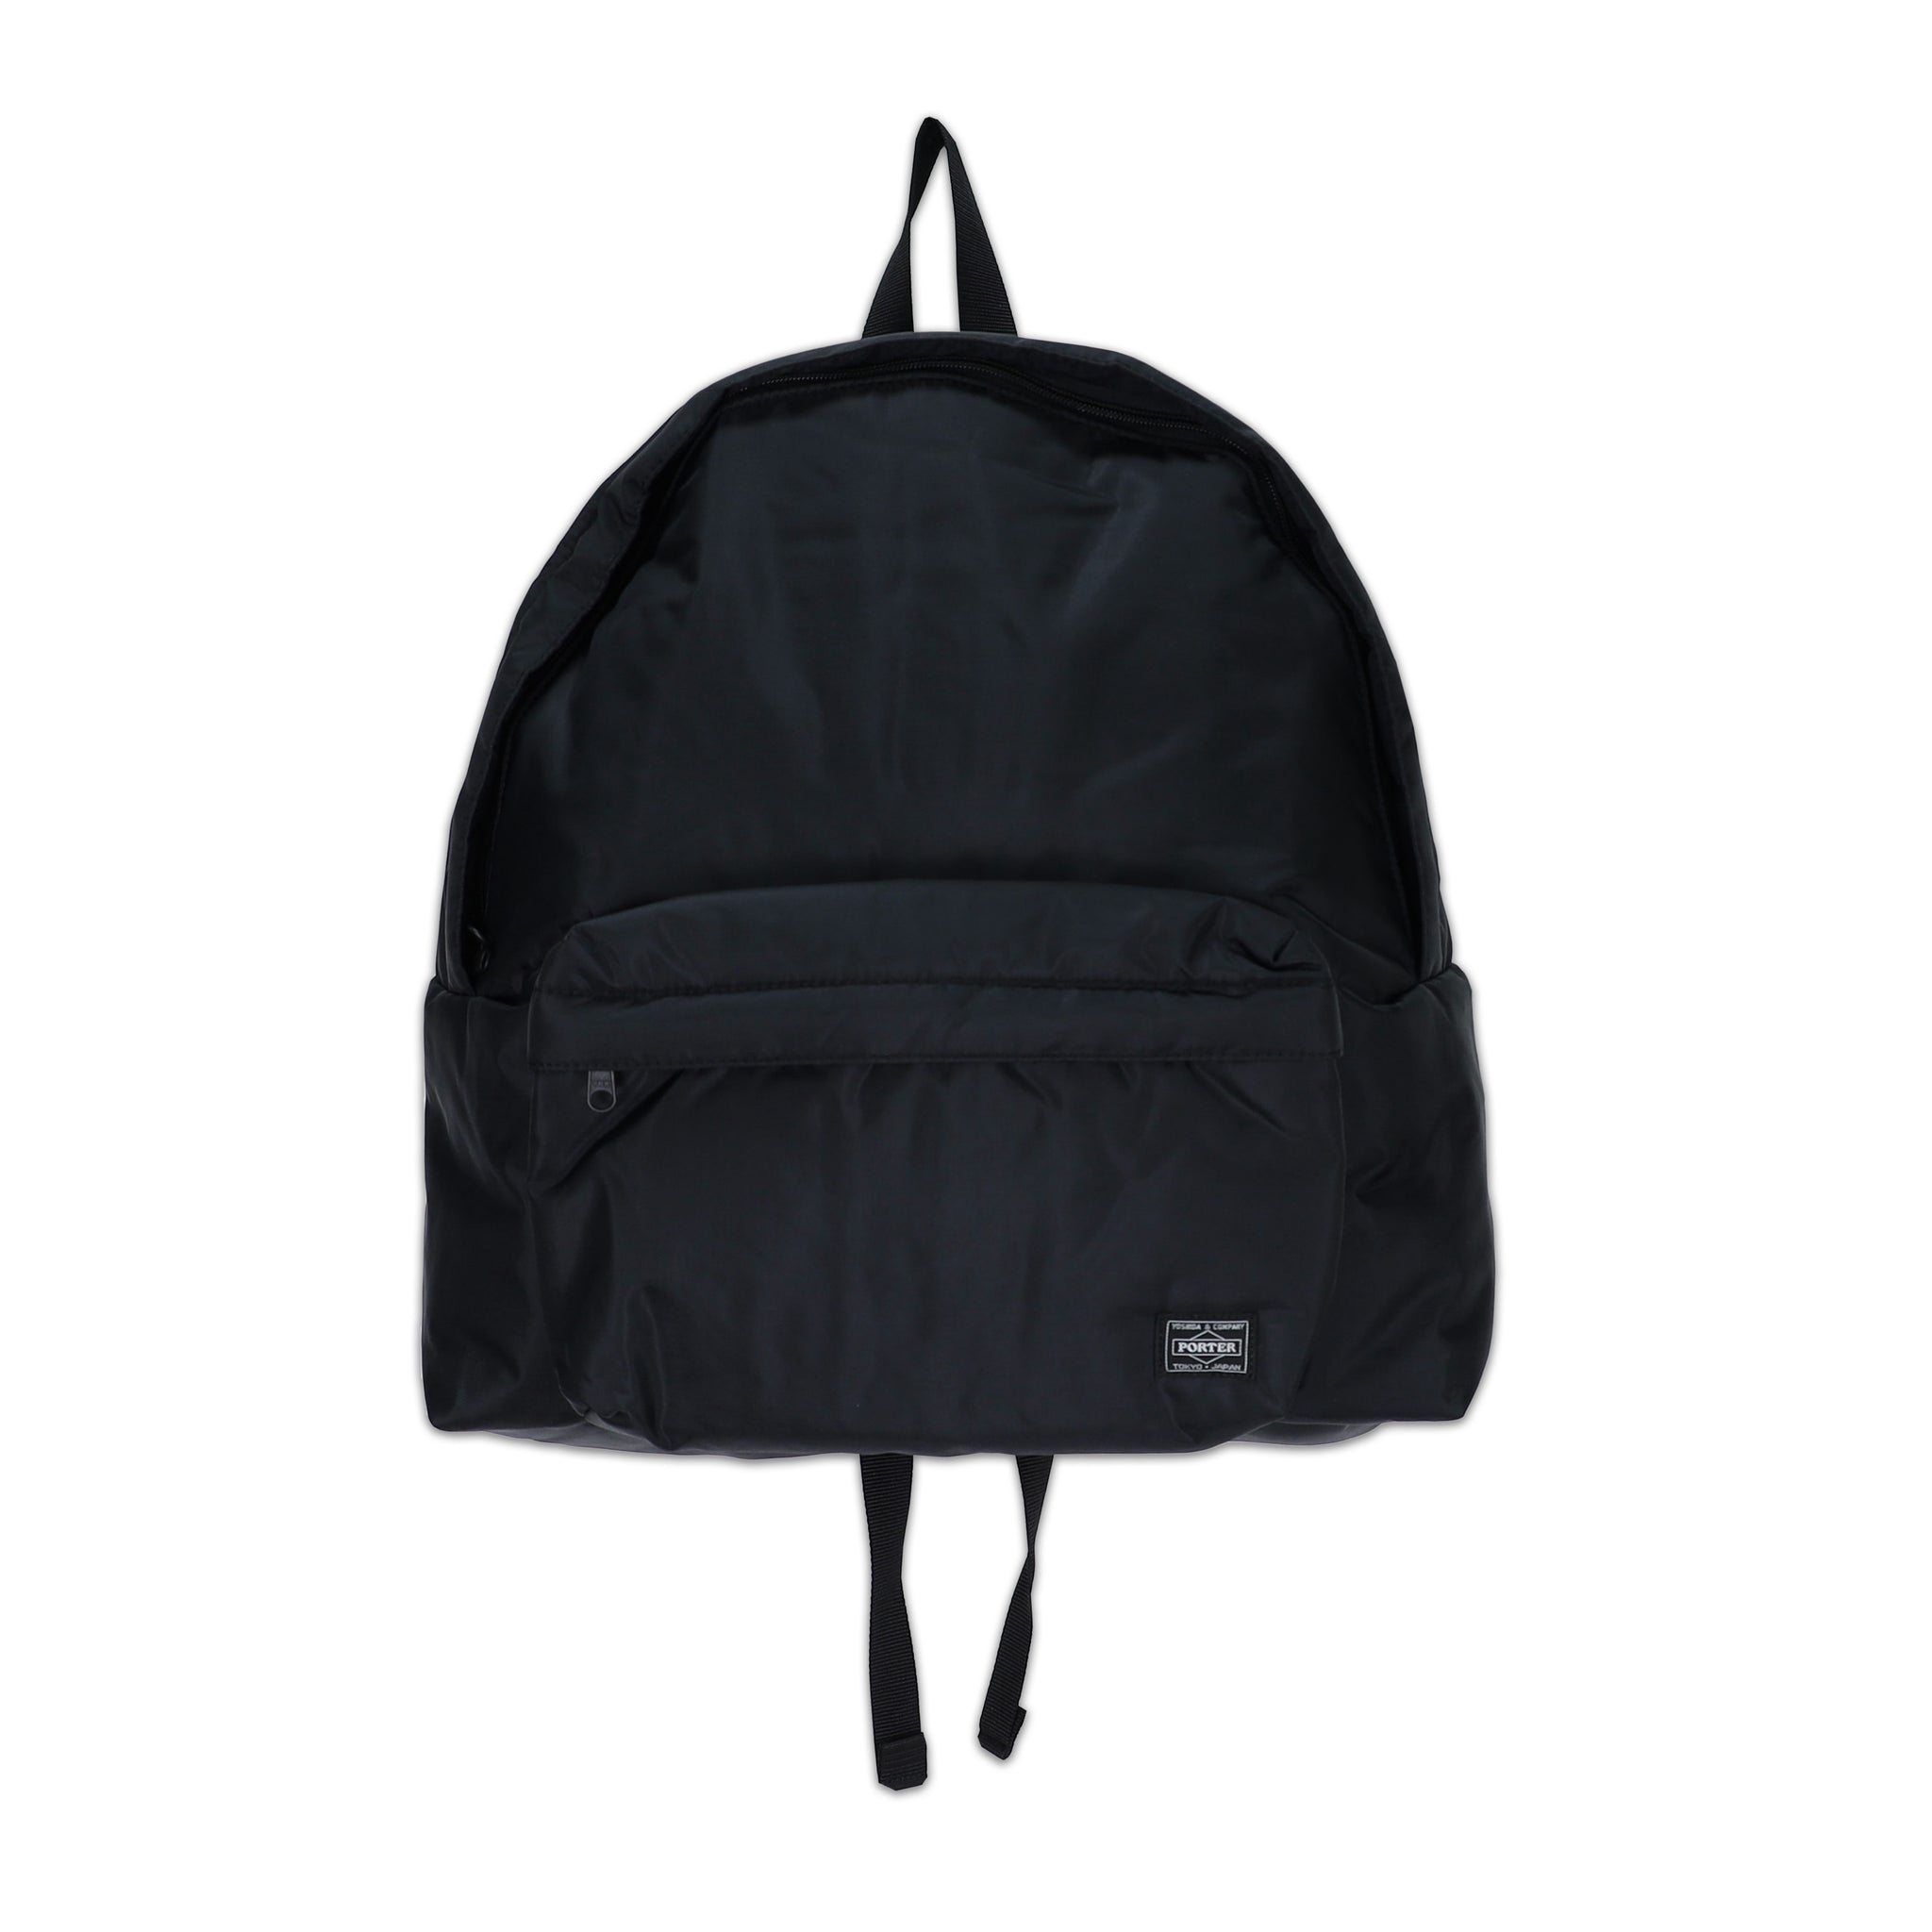 Porter Nylon Mid-Size Backpack